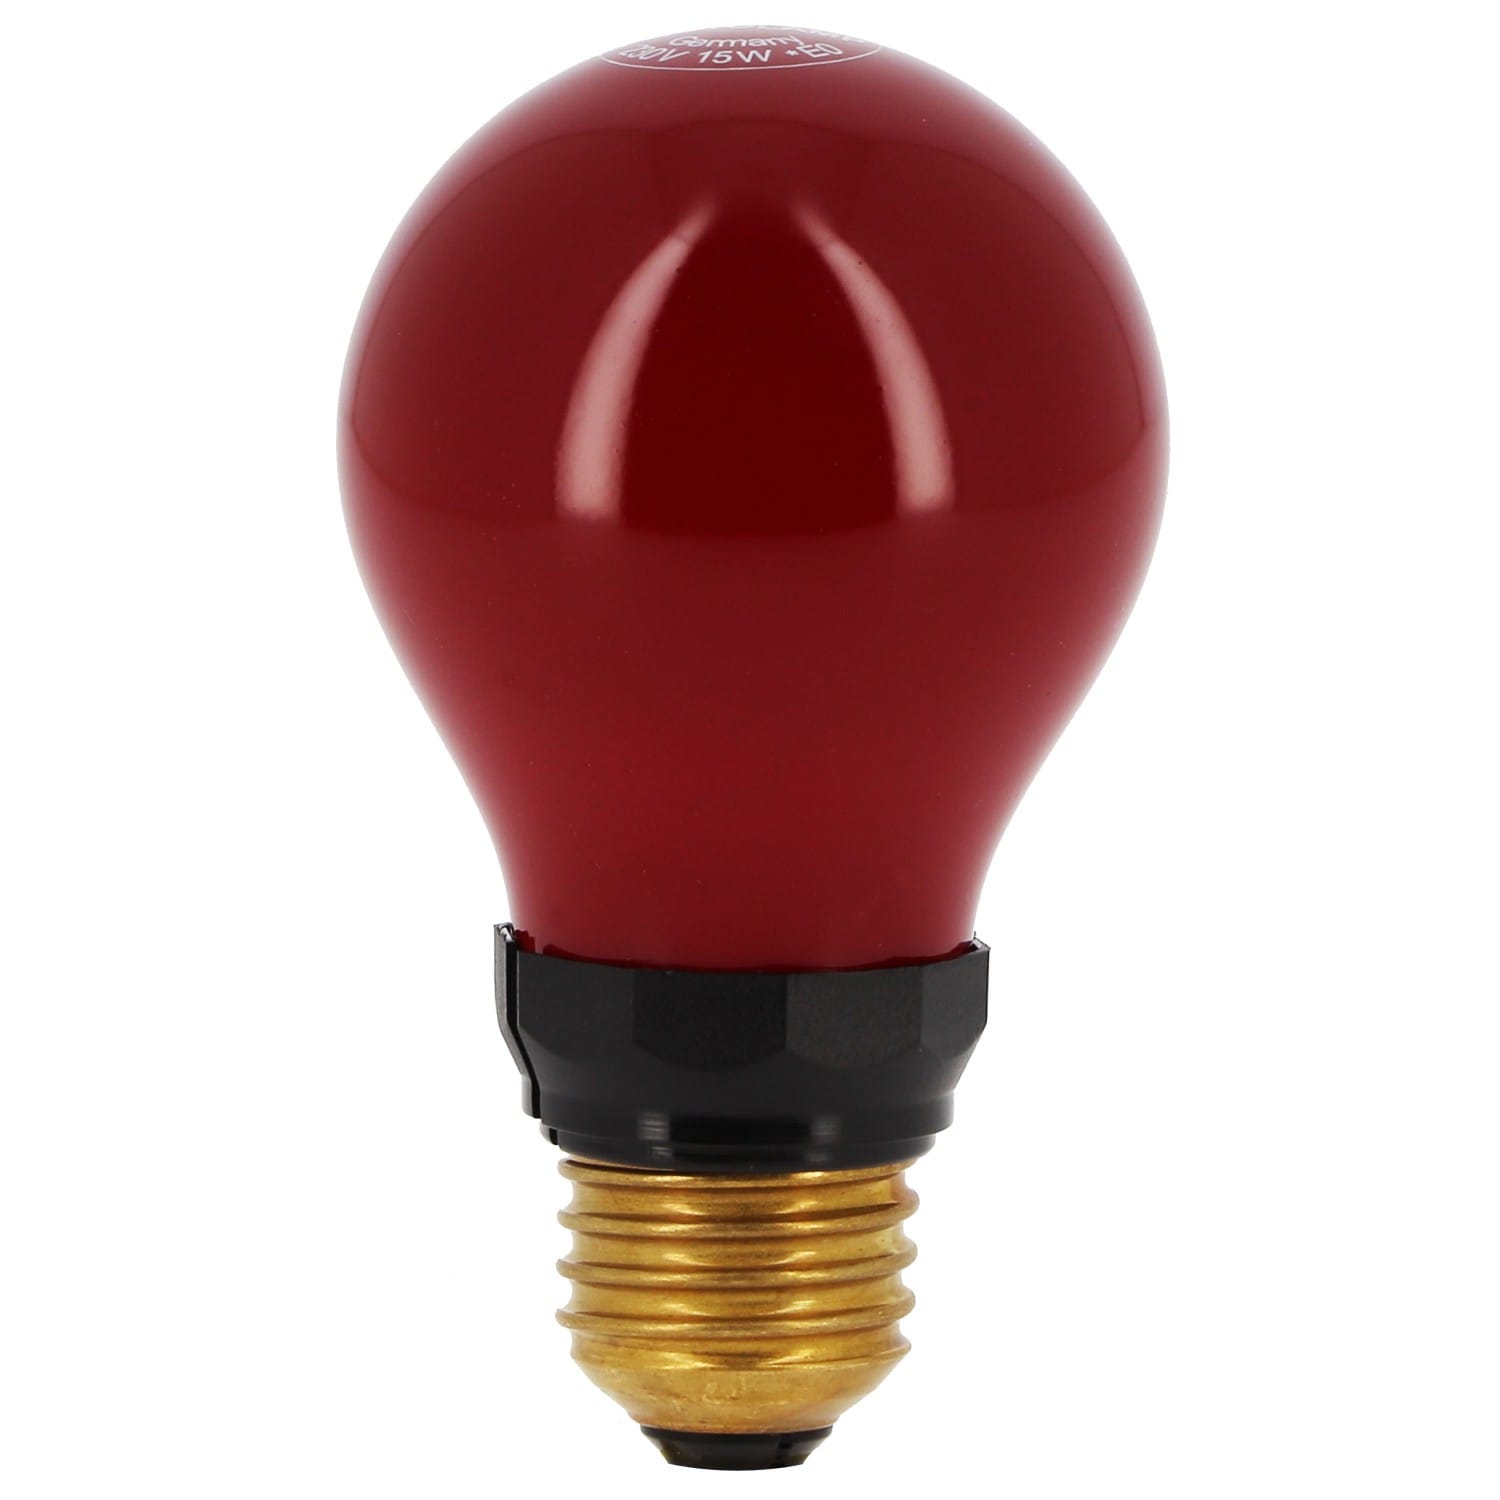 Ampoule led rouge culot E27